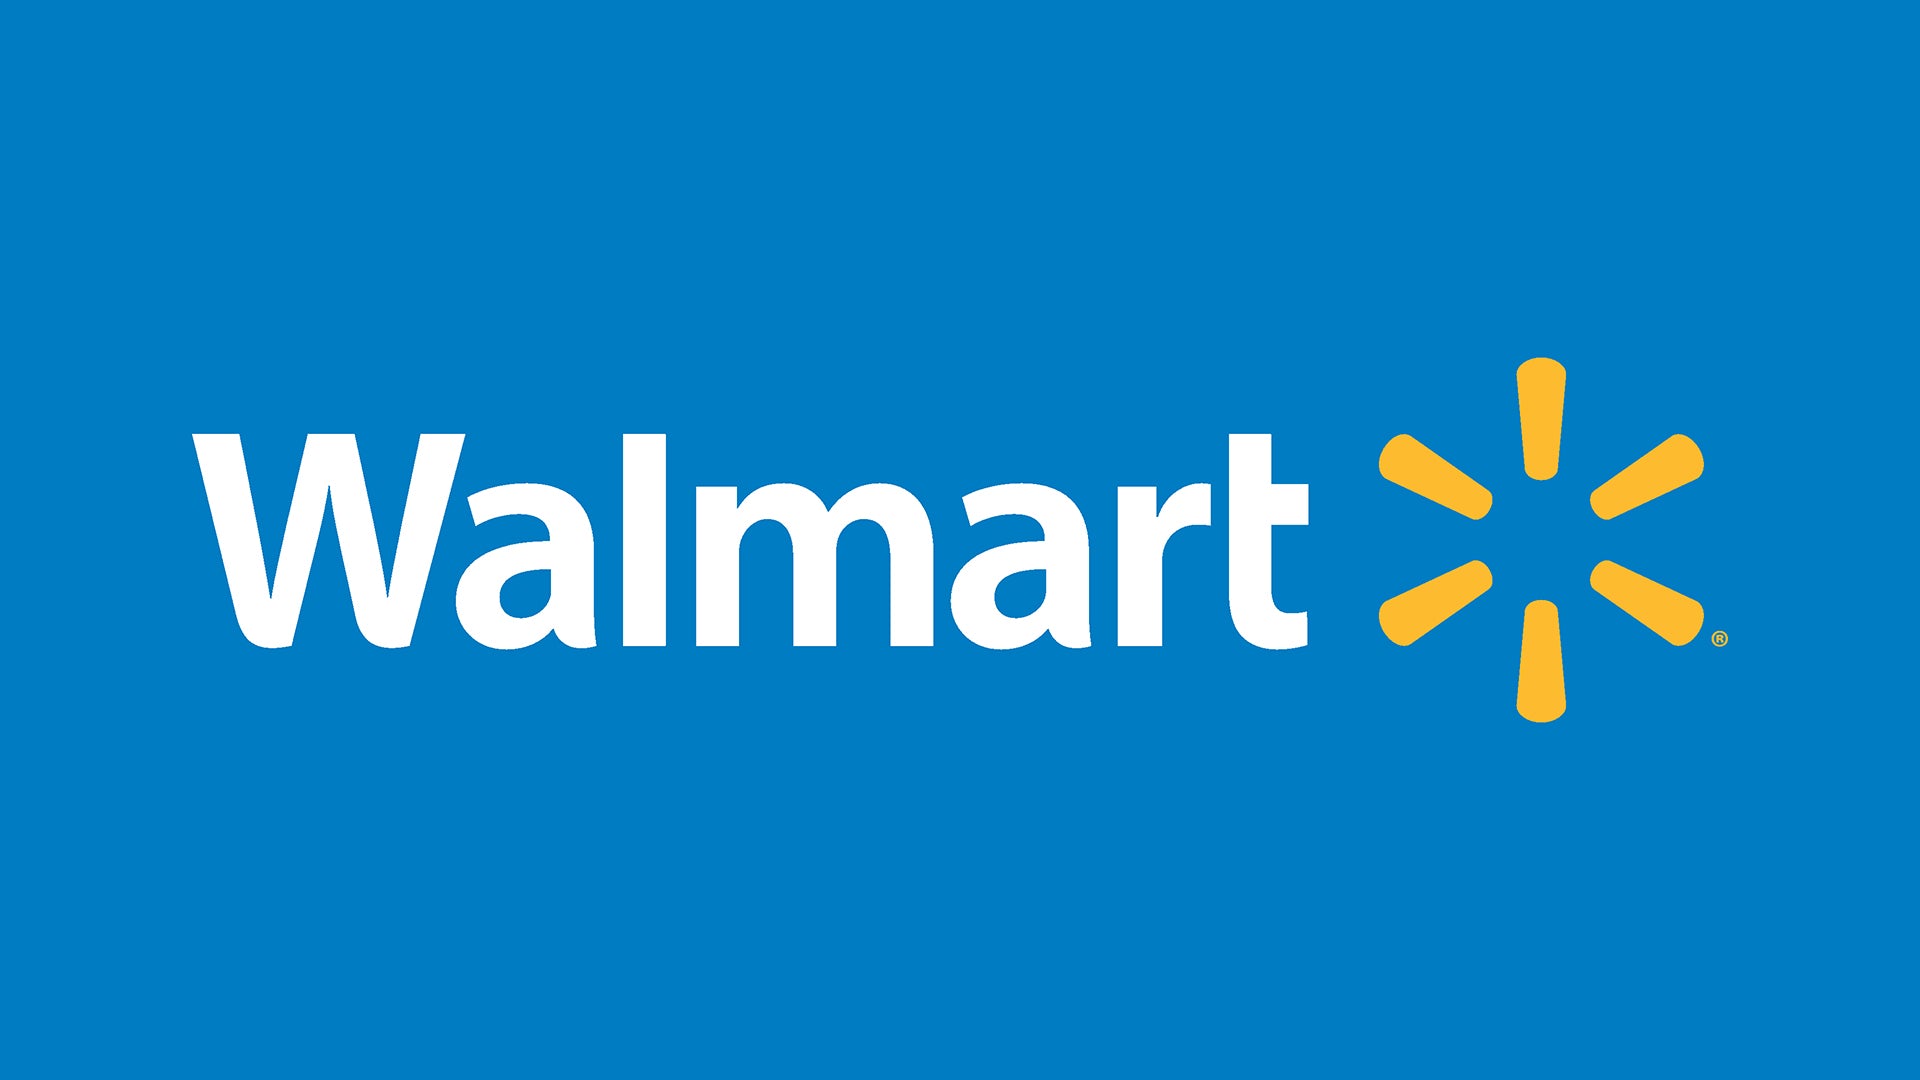 Aspectek's Giant Leap: Now Available at Walmart